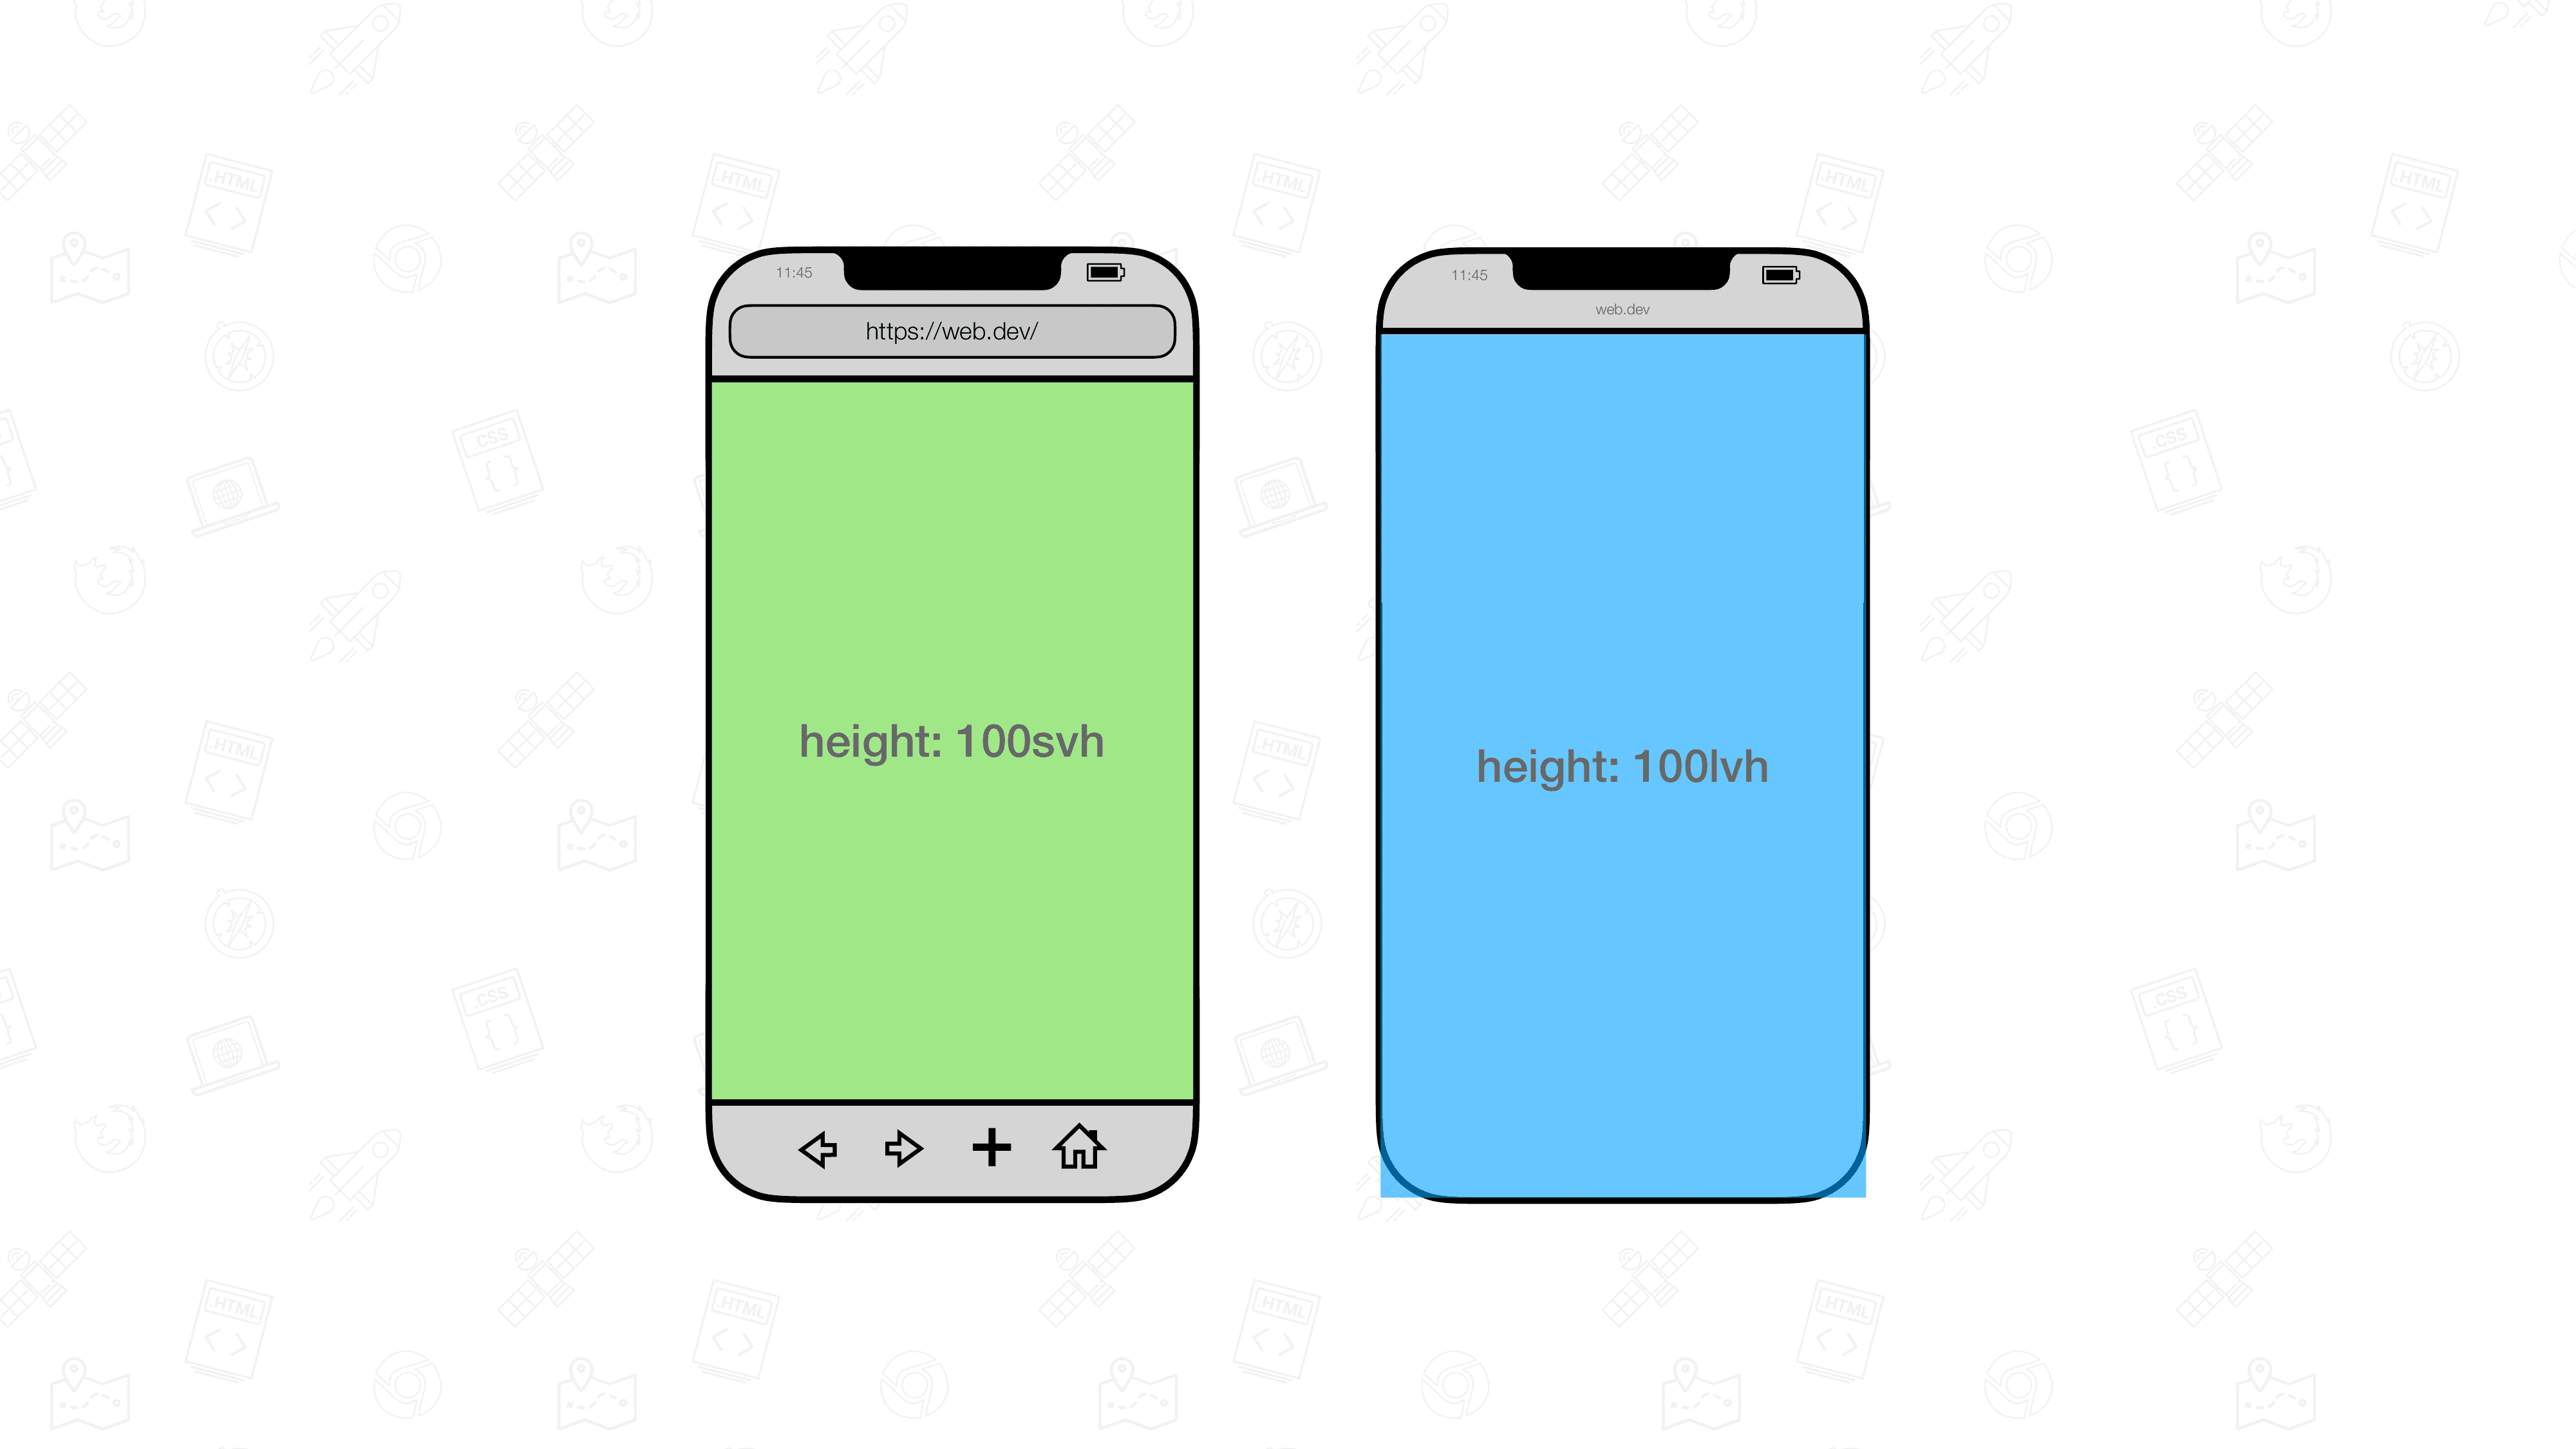 兩個行動瀏覽器並排顯示。其中一個含有大小為 100svh 的元素，另一個則是 100 lvh。